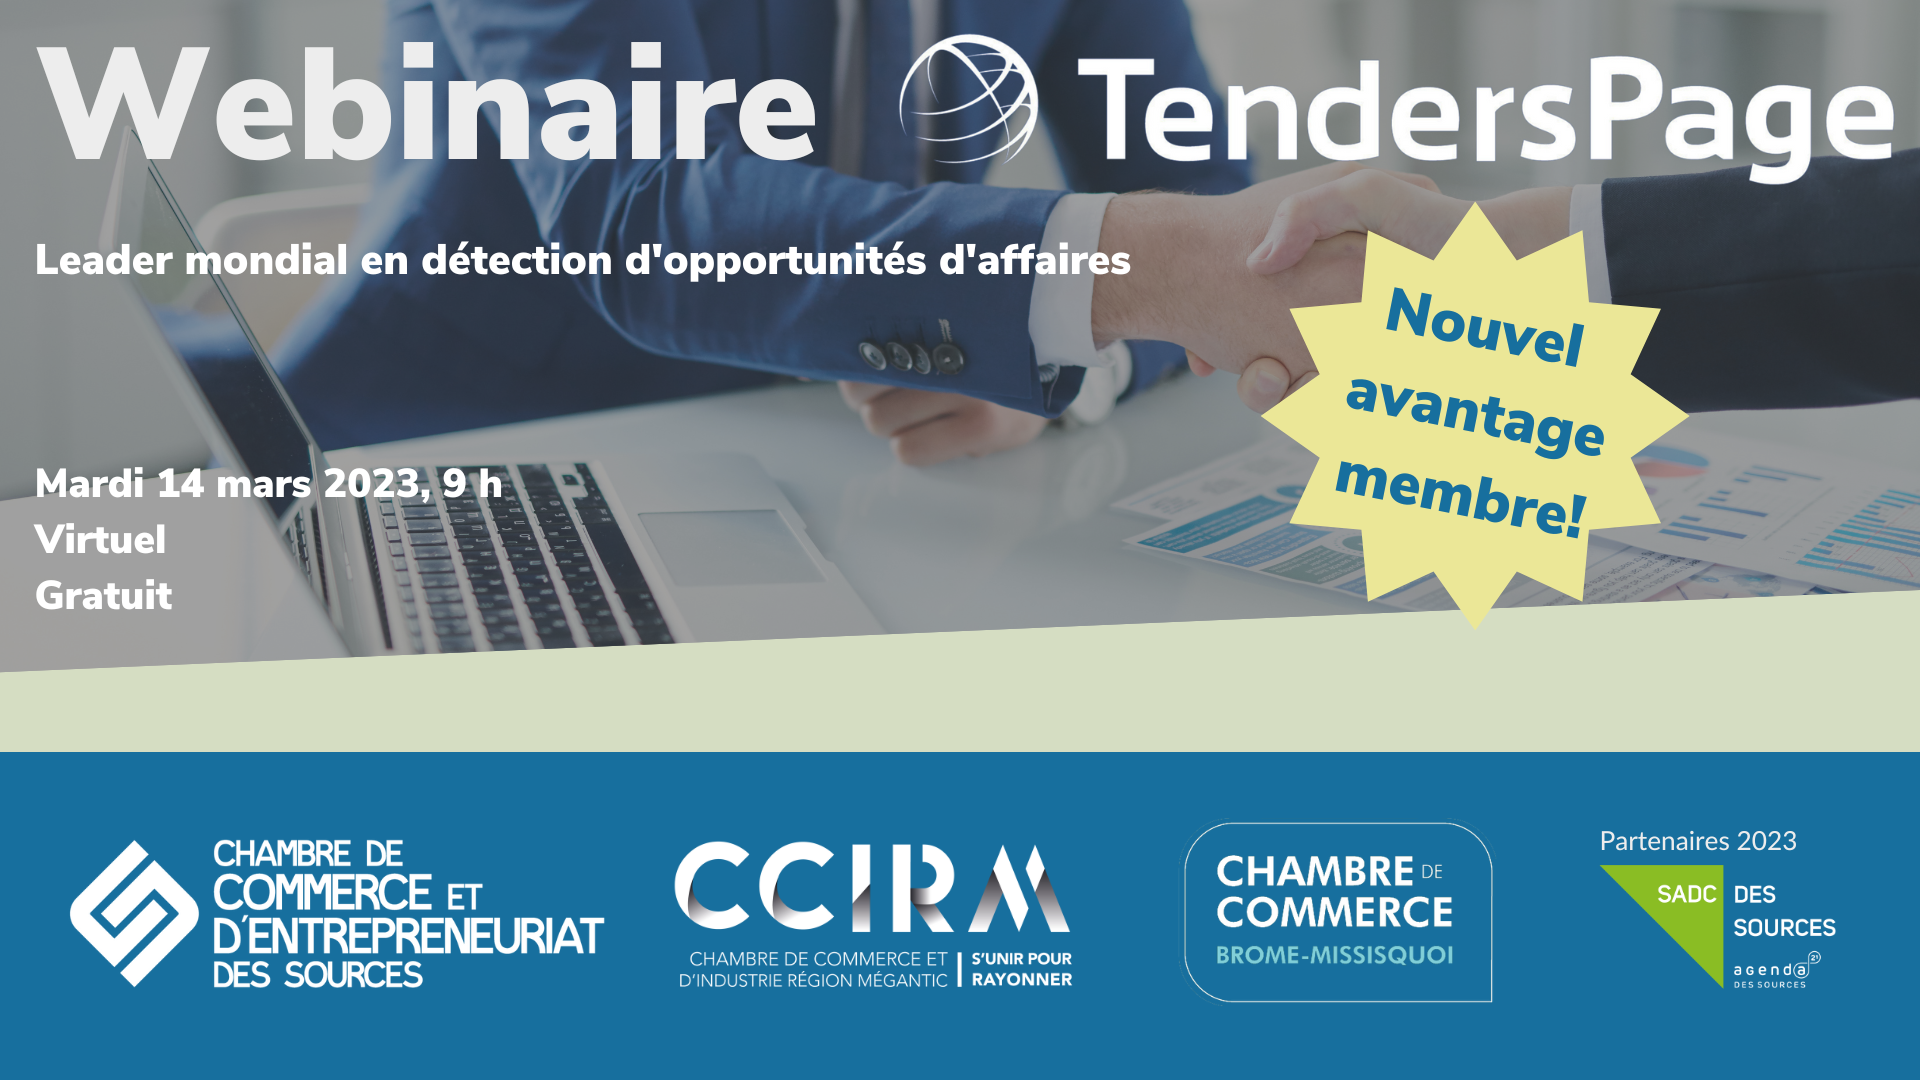 Webinaire TendersPage - Nouvel avantage membre!